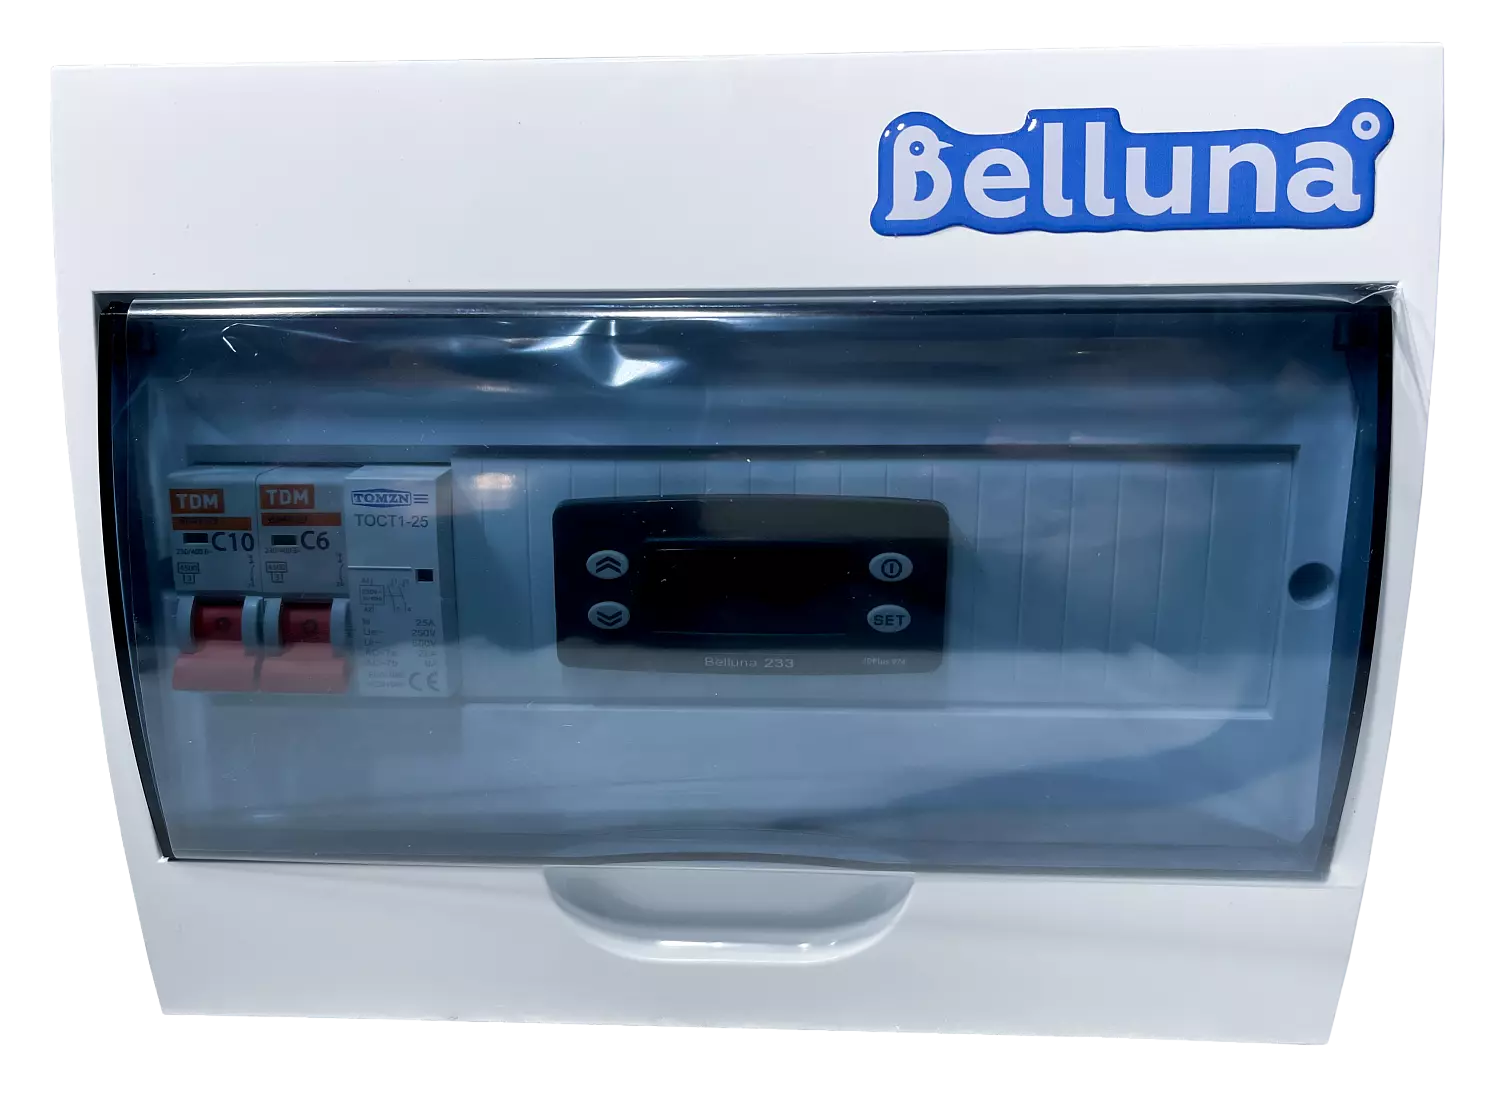 сплит-система Belluna S115 Омск